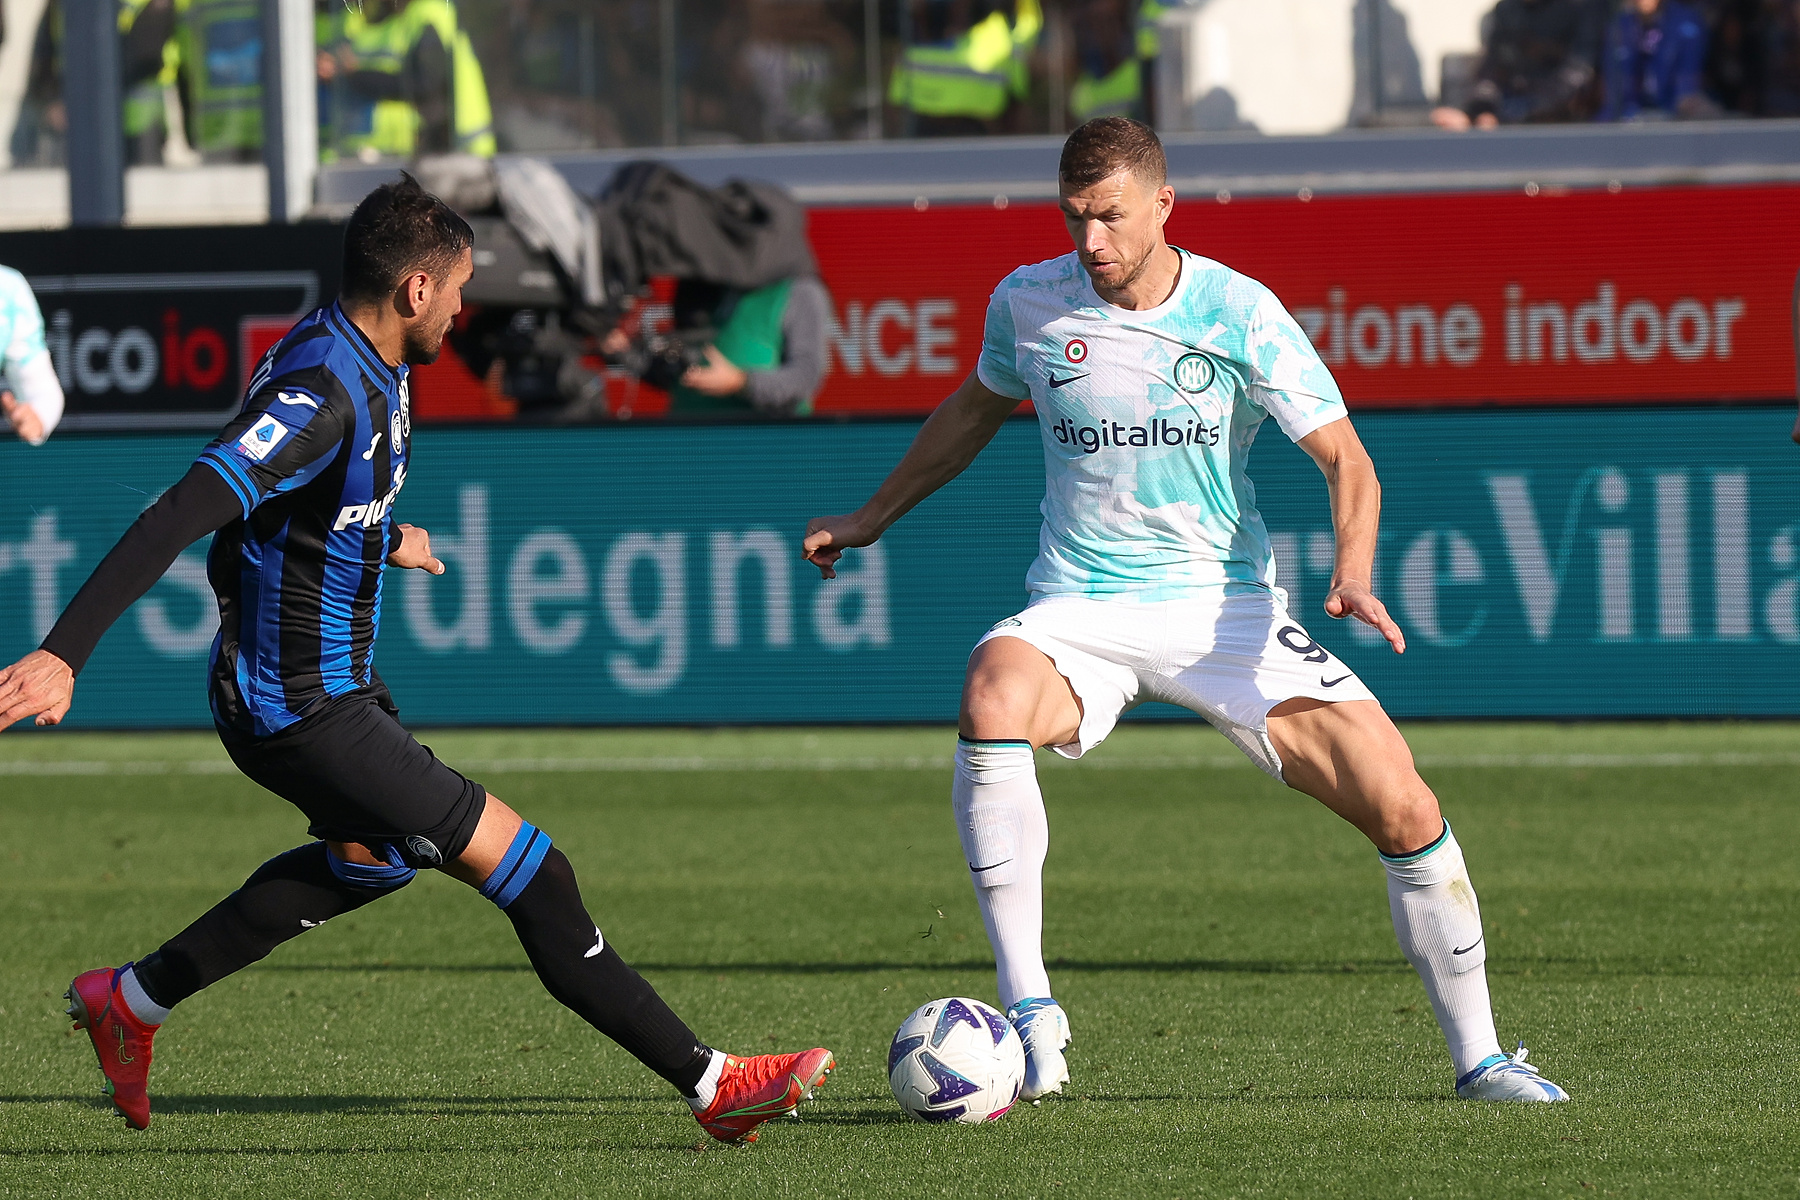 Coppa Italia: Inter Mediolan – Atalanta Bergamo zapowiedź, typy i kursy bukmacherskie